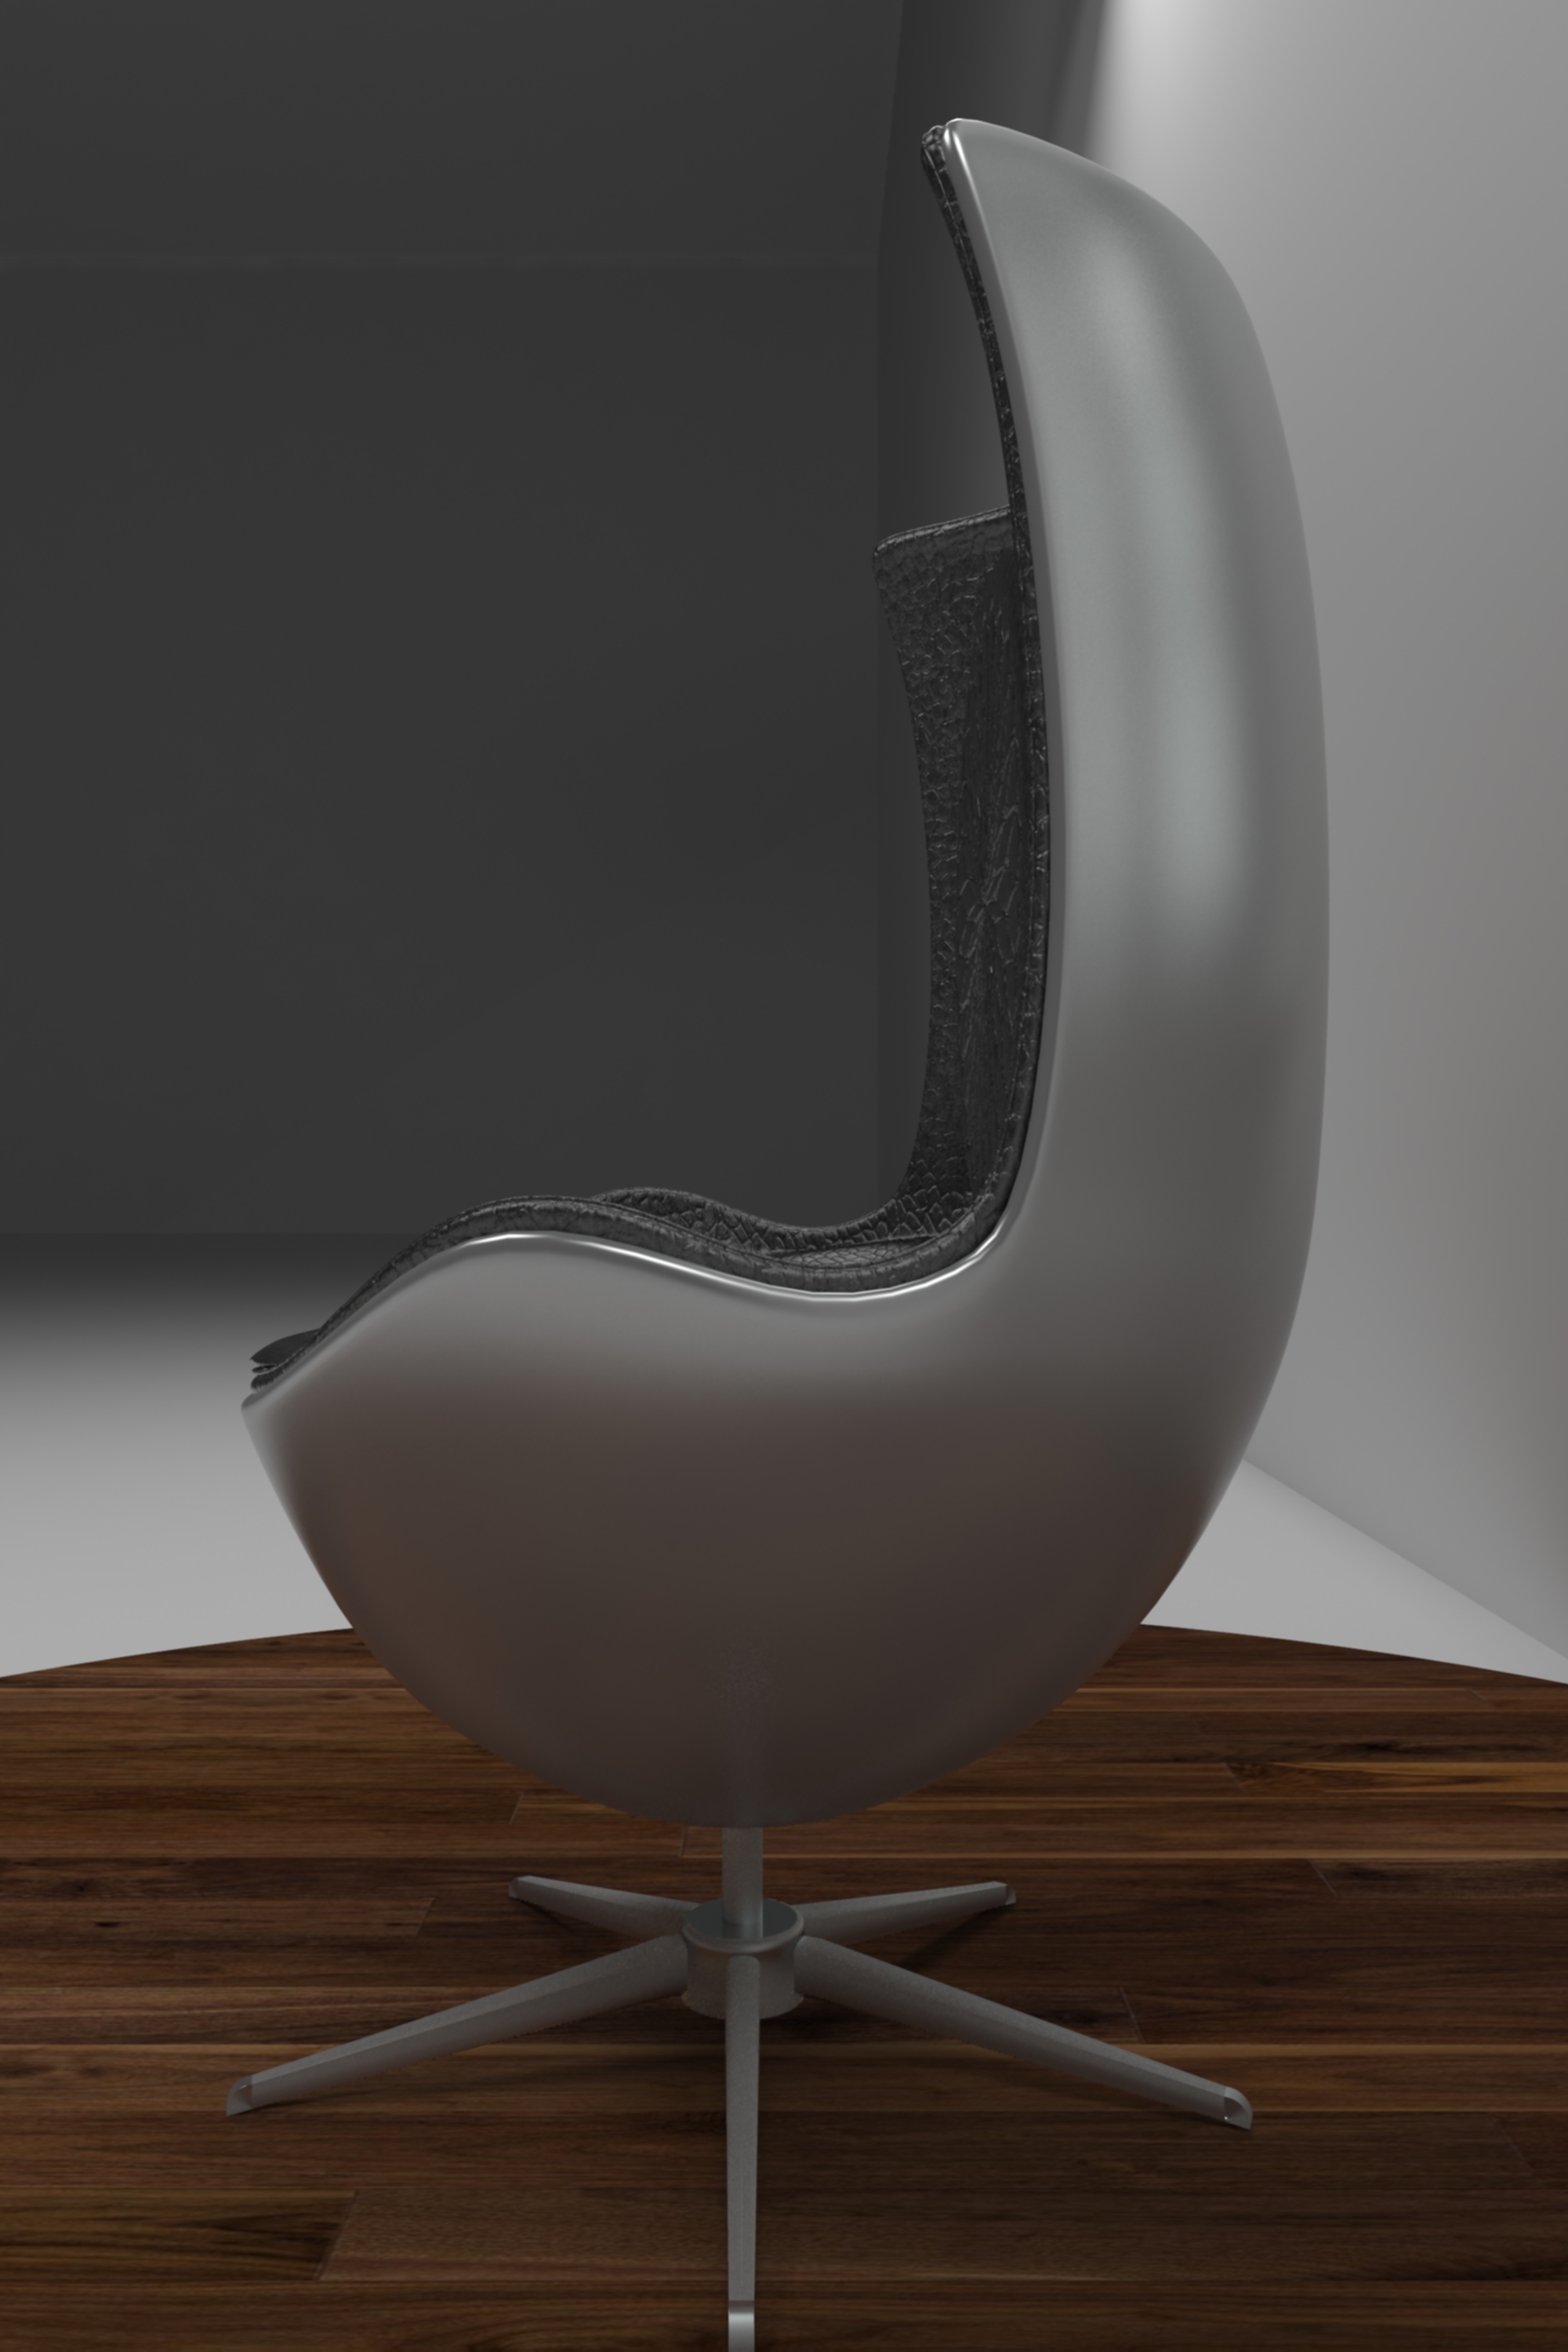 鸡蛋椅&天鹅椅—最优雅的北欧设计作品 - 知乎